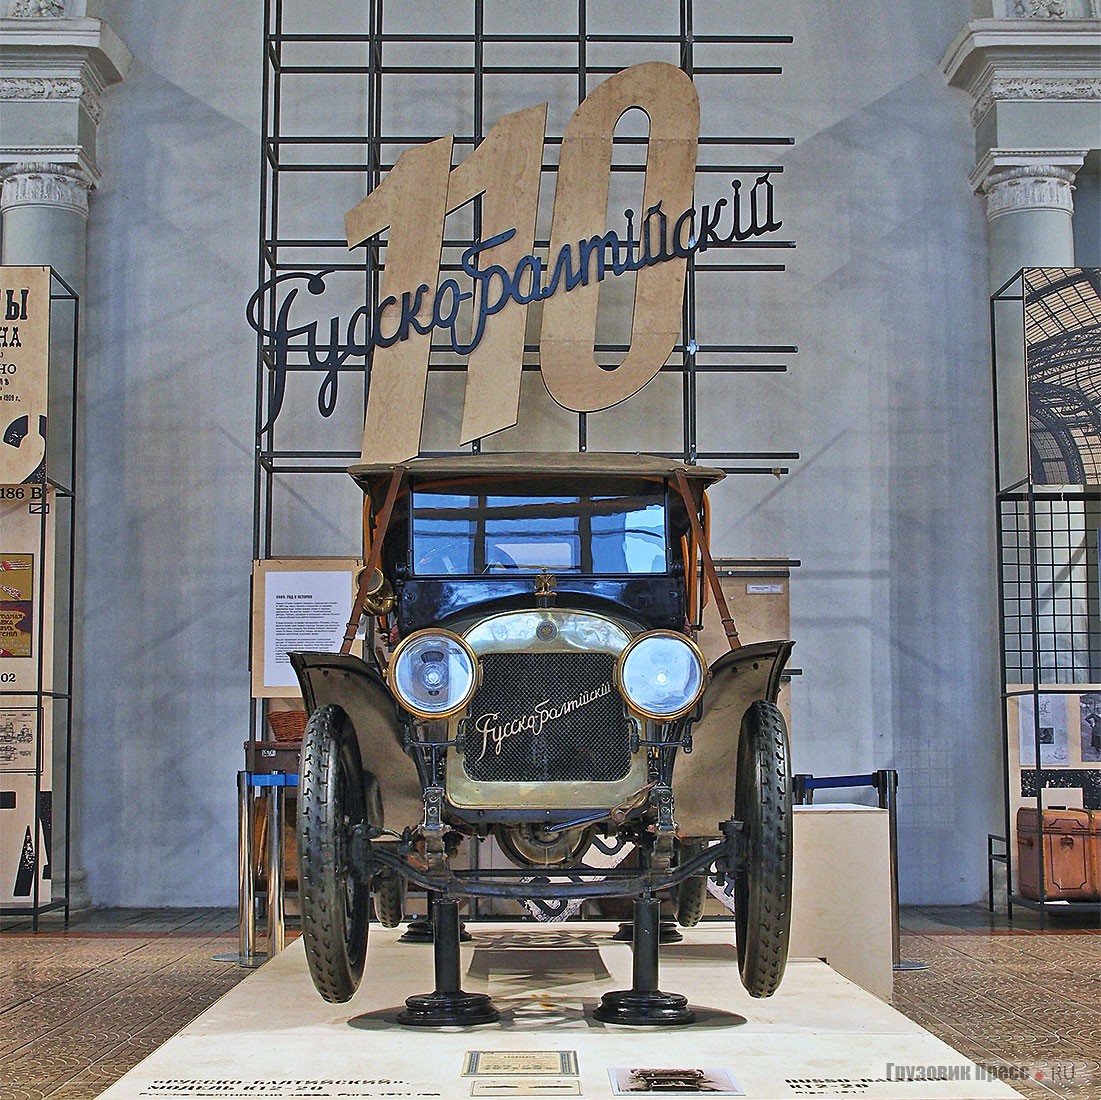 «Русско-Балтийский» модели К 12-20 V серии, № 73 – один из двух дошедших до нас оригинальных автомобилей этой марки. Находится в собрании Политехнического музея